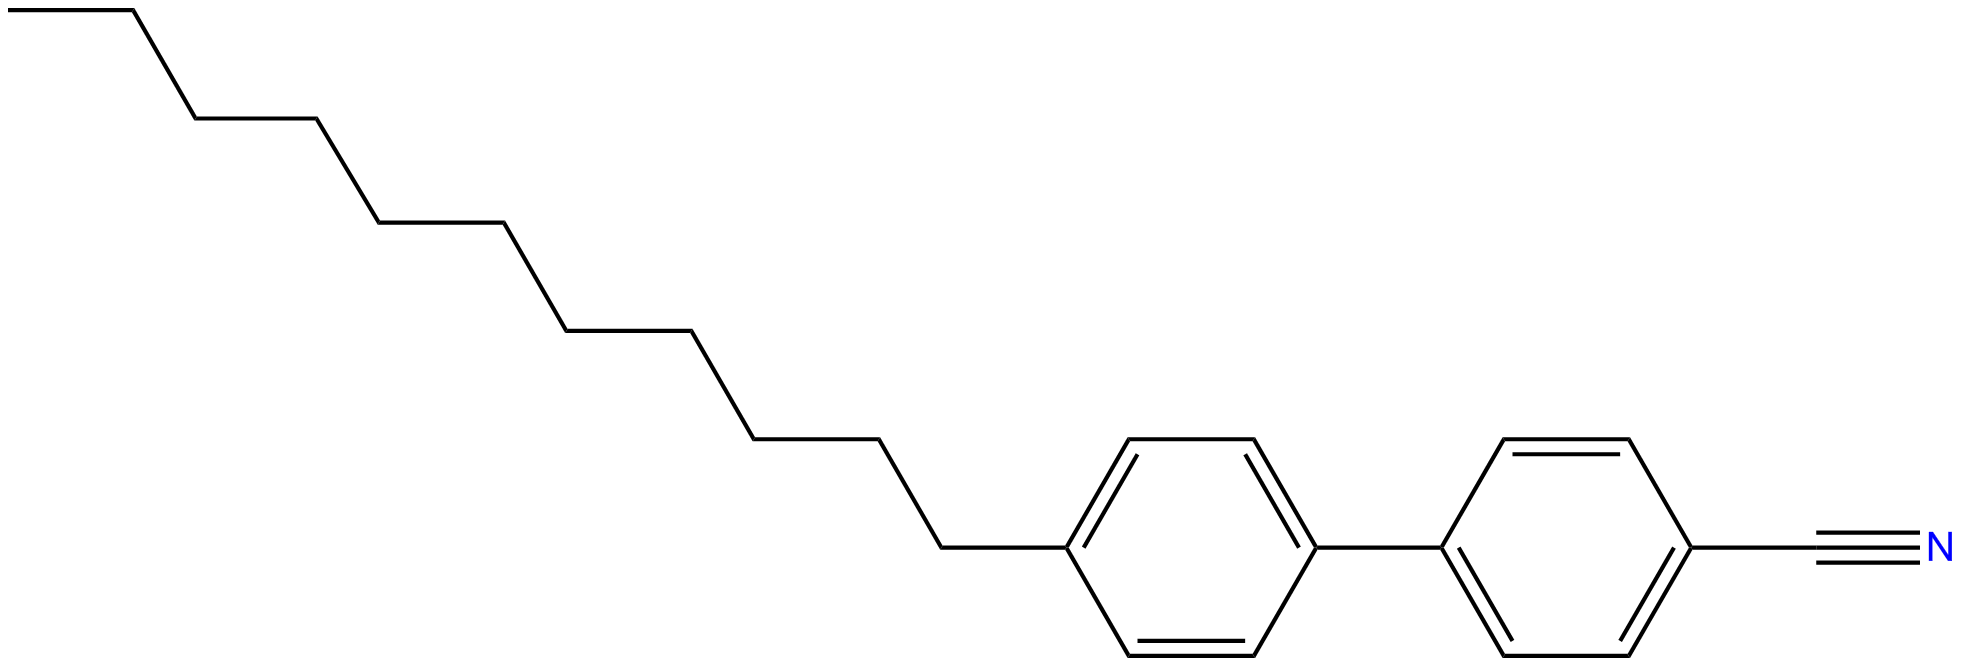 Image of 4-cyano-4'-undecyl-1,1'-biphenyl